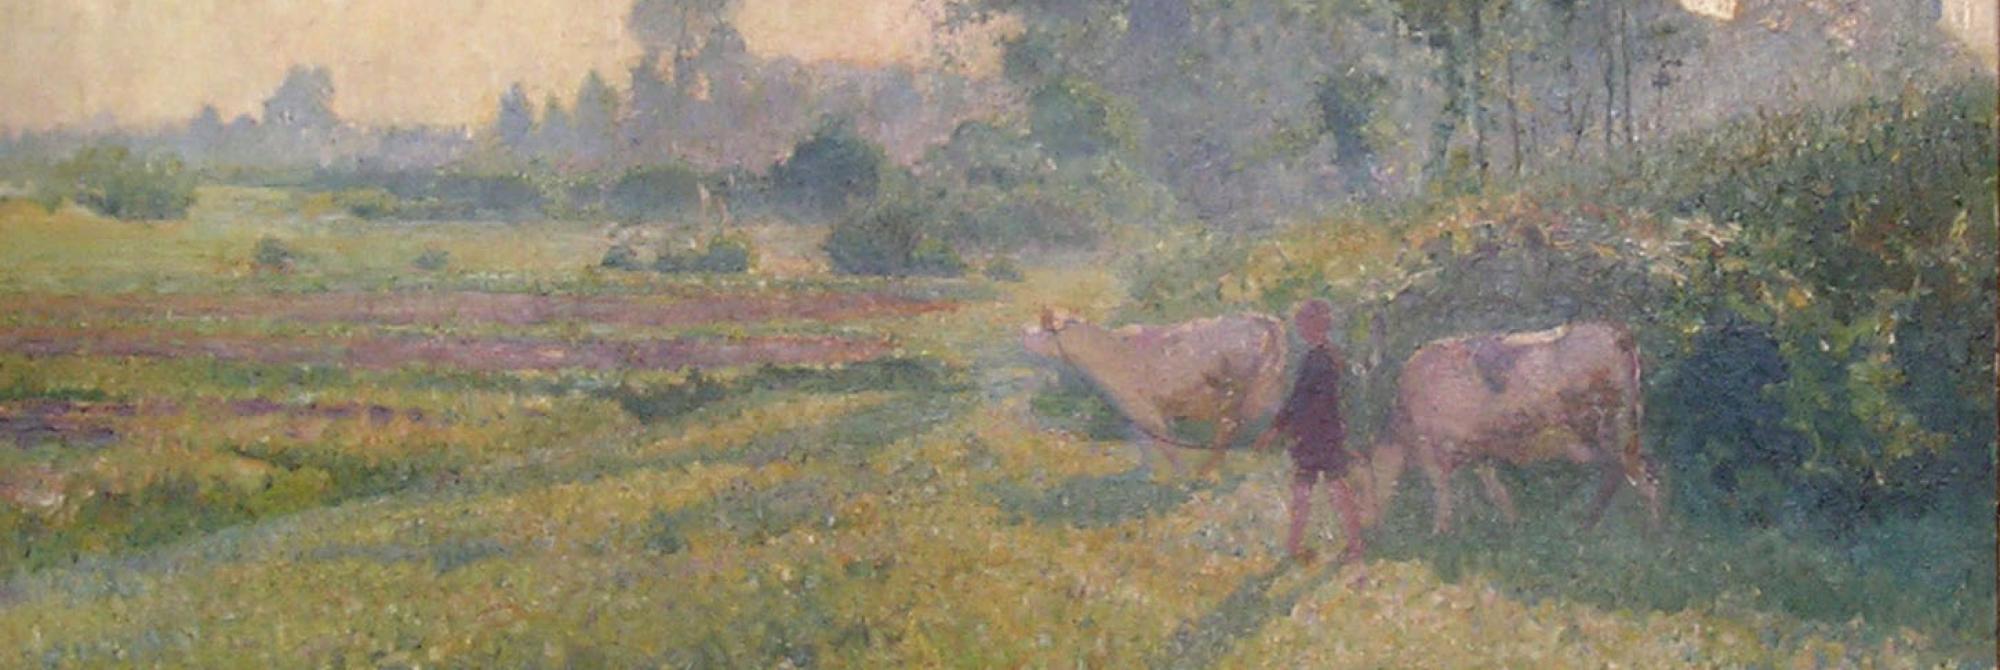 Schilderij Bij morgendauw van Ernest Welvaert: een zomers tafereel